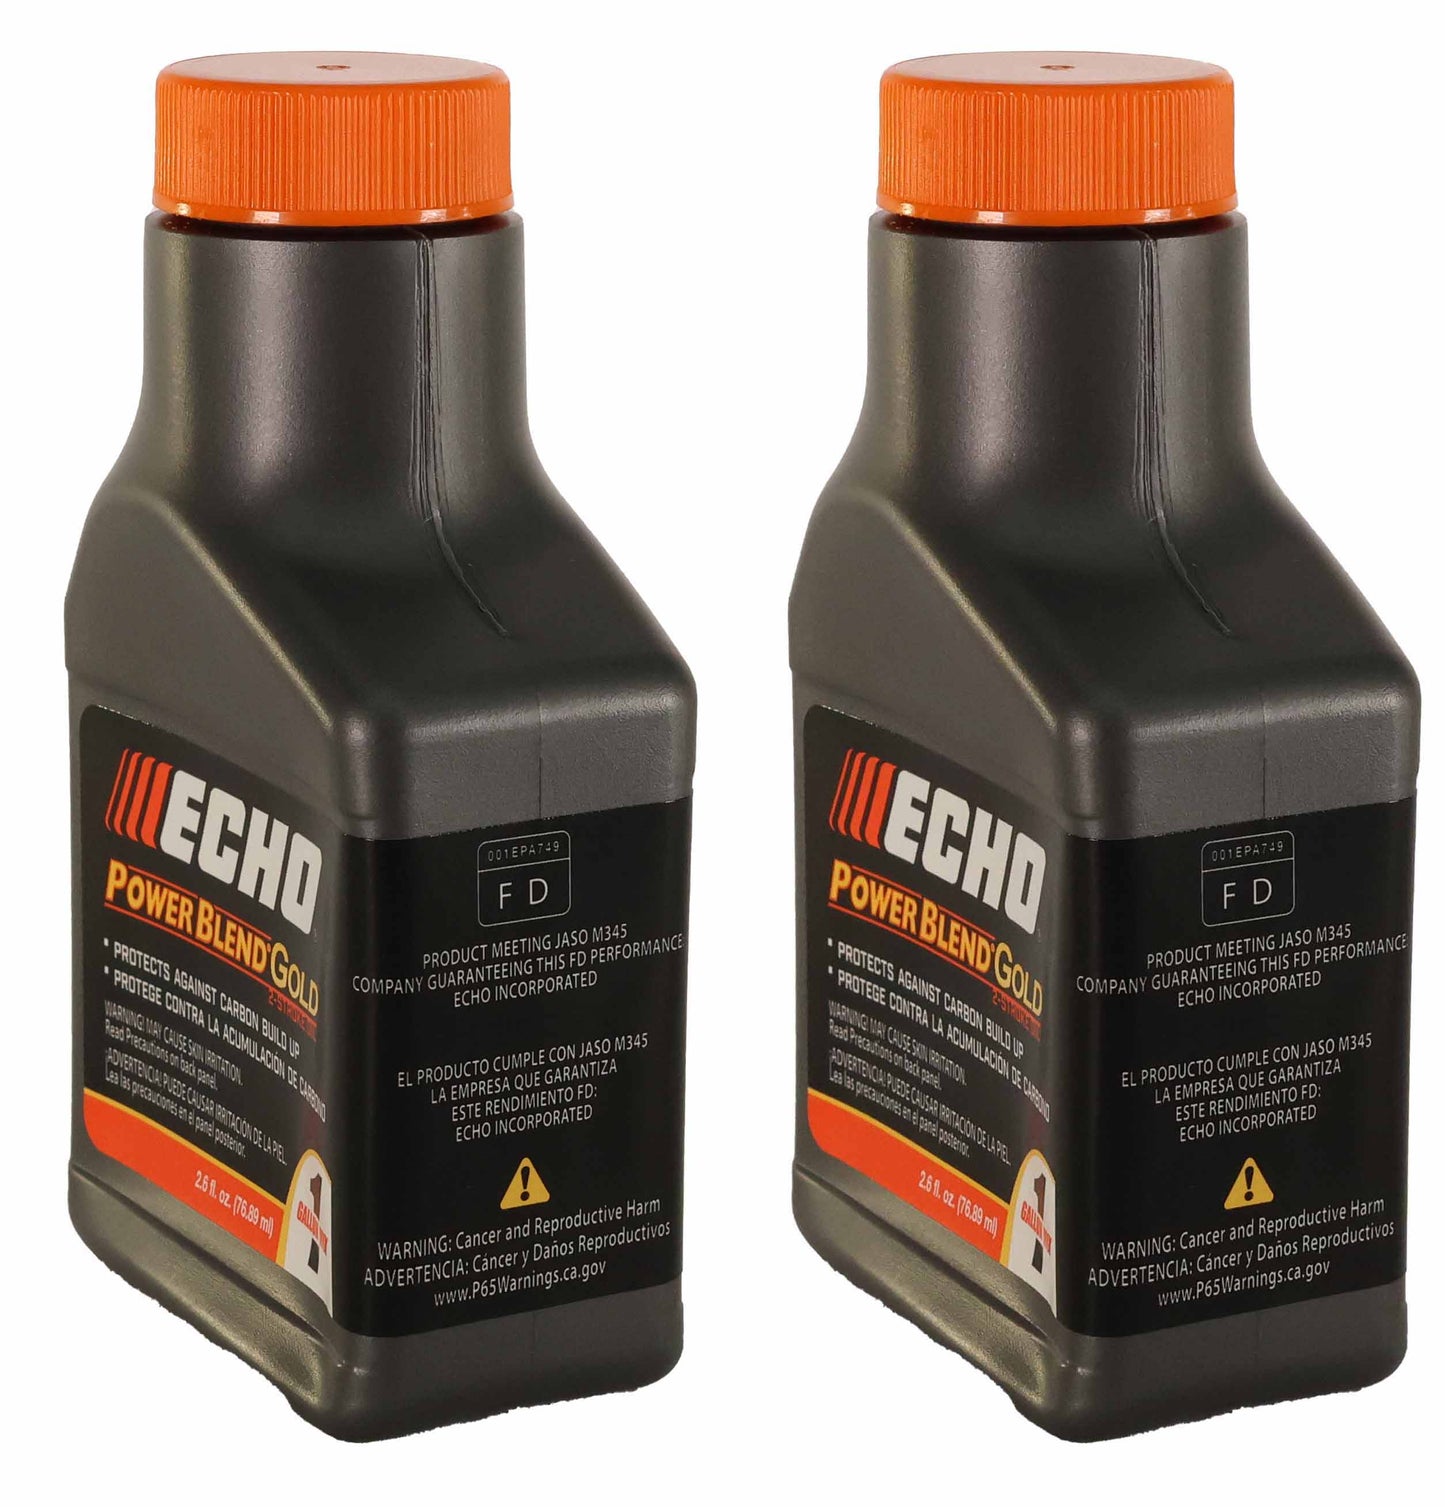 Echo Original Equipment 2-PACK Power Blend Gold Oil Mix 50:1 (2.6 fl oz Bottles) - 6450001